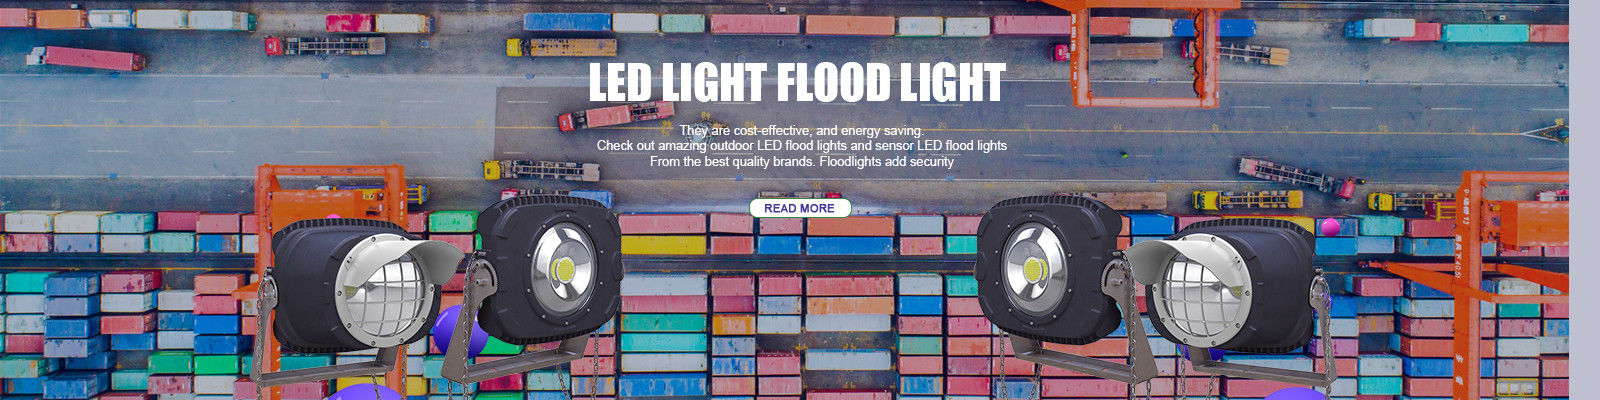 Đèn LED lũ lụt ngoài trời